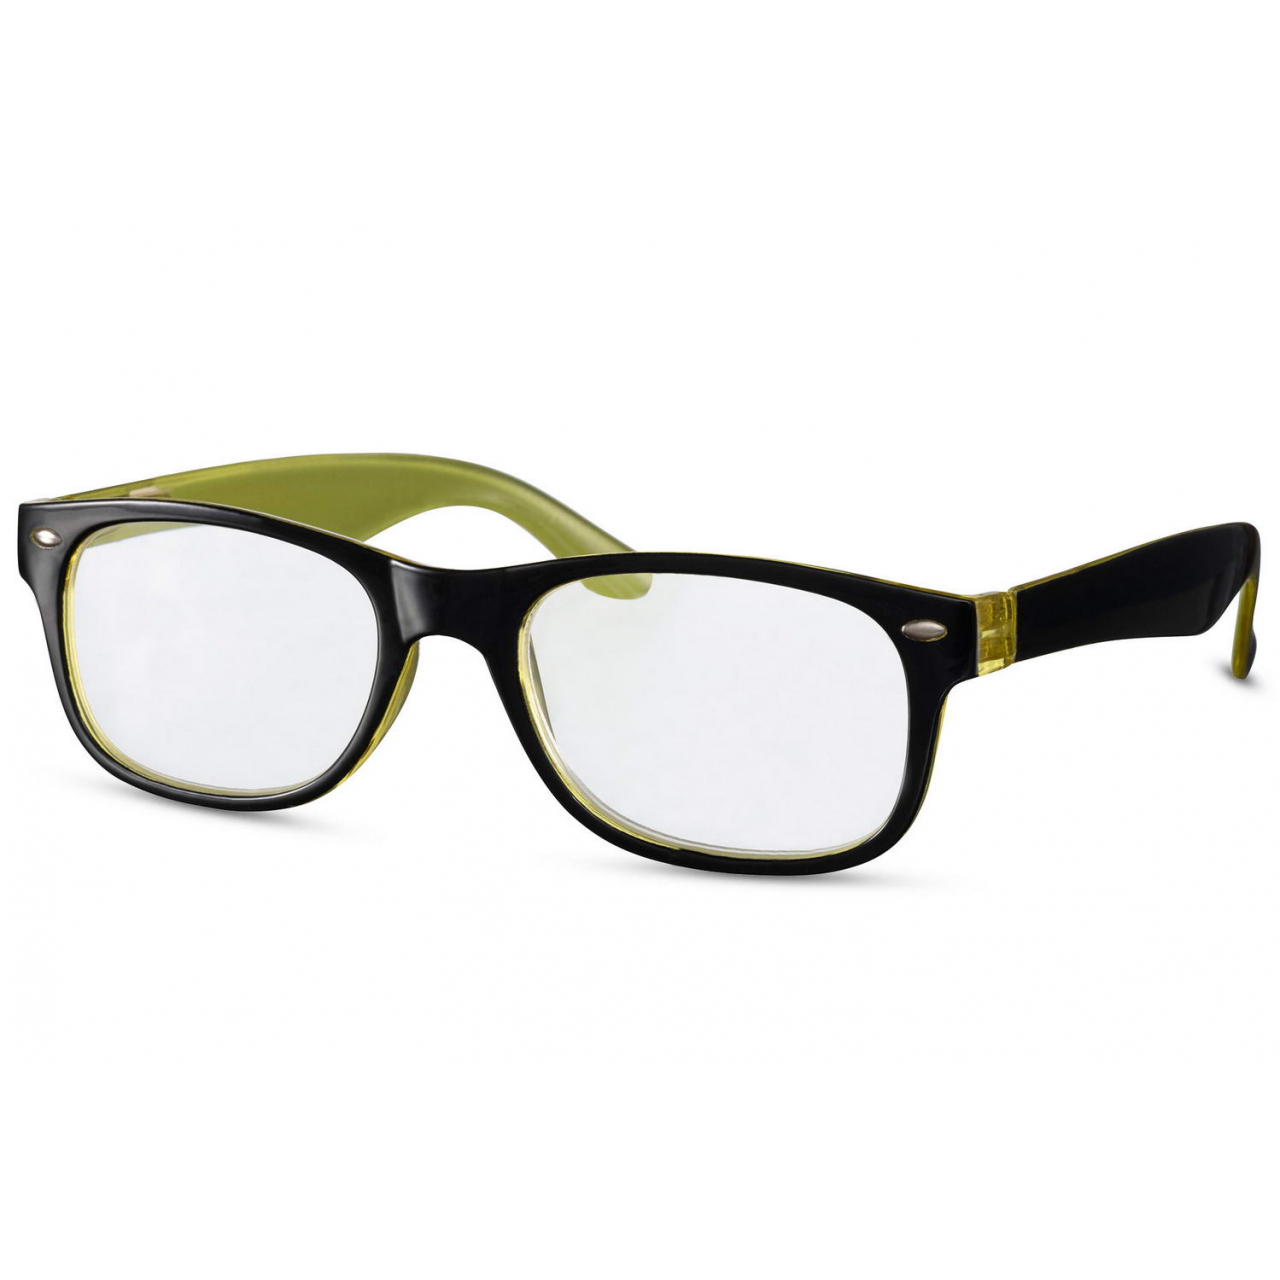 Dioptrické brýle Solo Color - černé-zelené